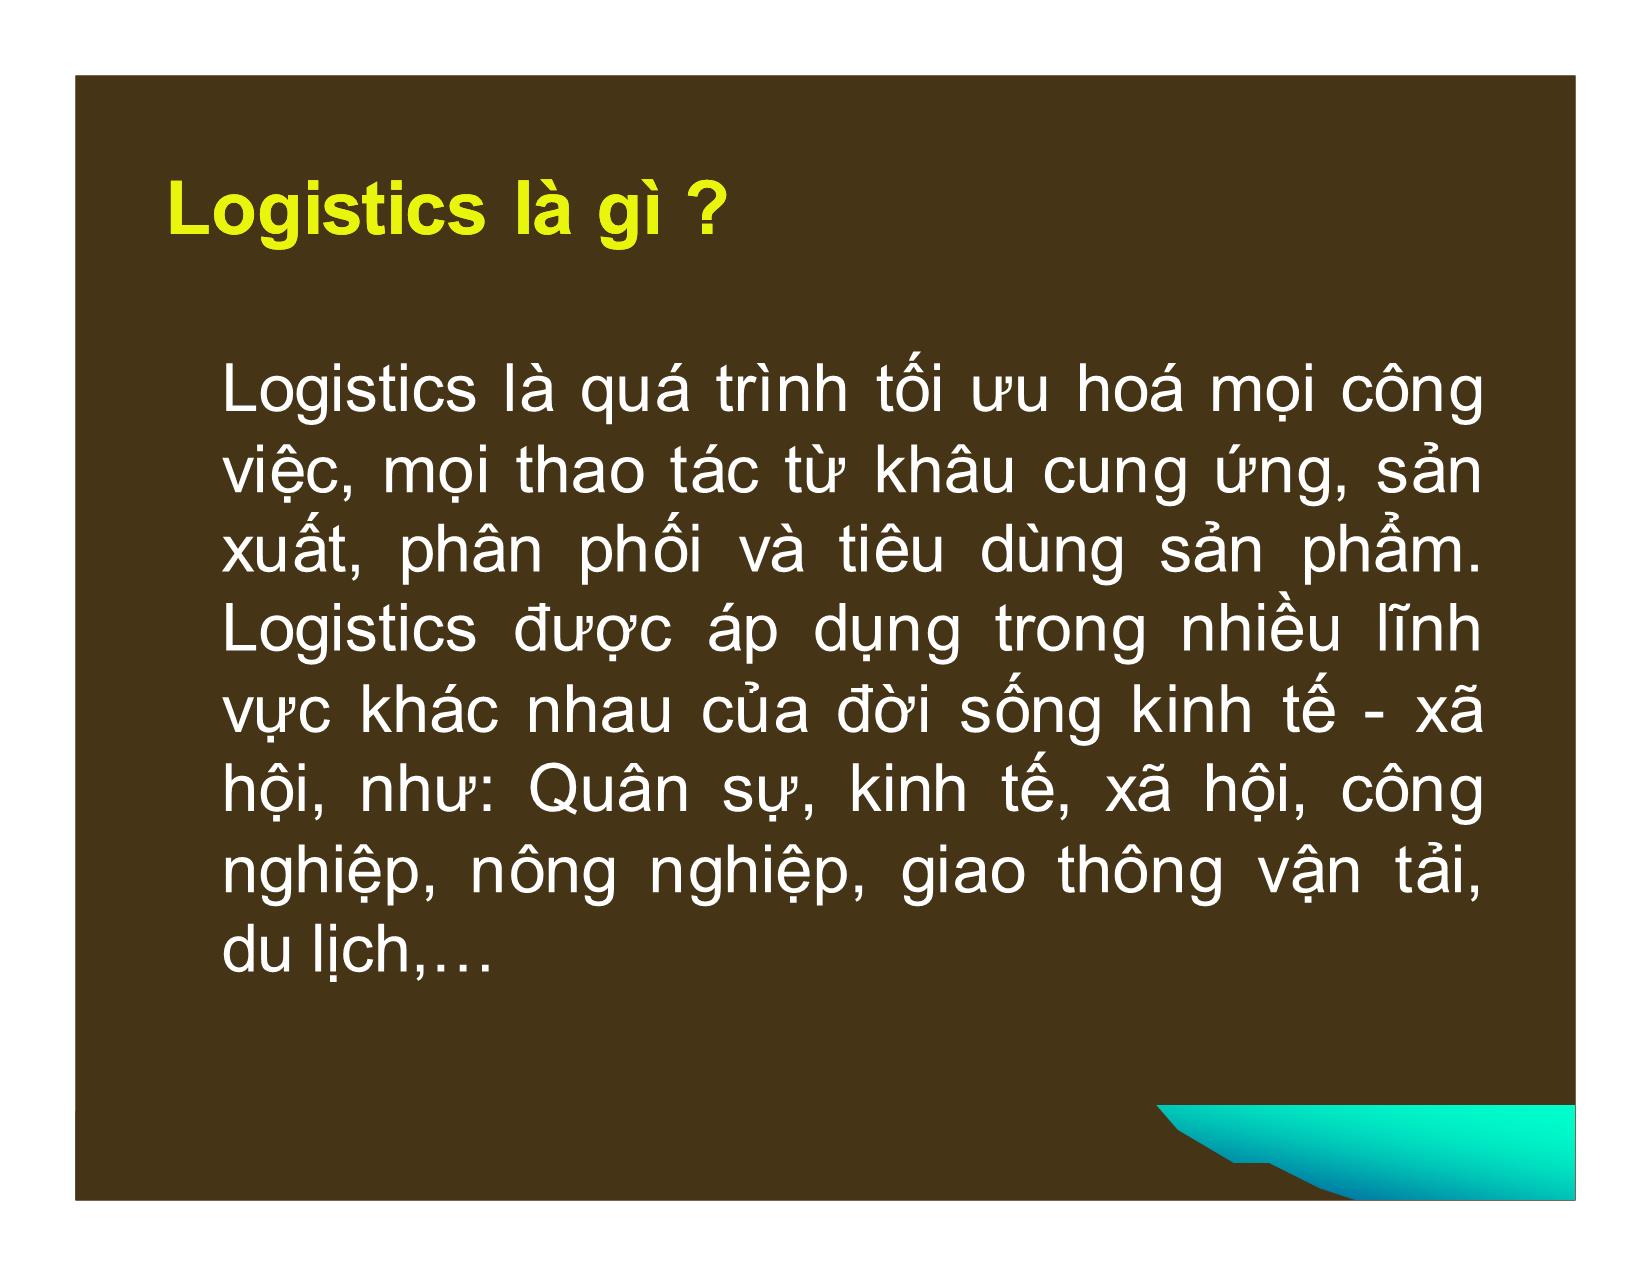 Phát triển dịch vụ logistics ở Việt Nam trong điều kiện hội nhập kinh tế quốc tế trang 4